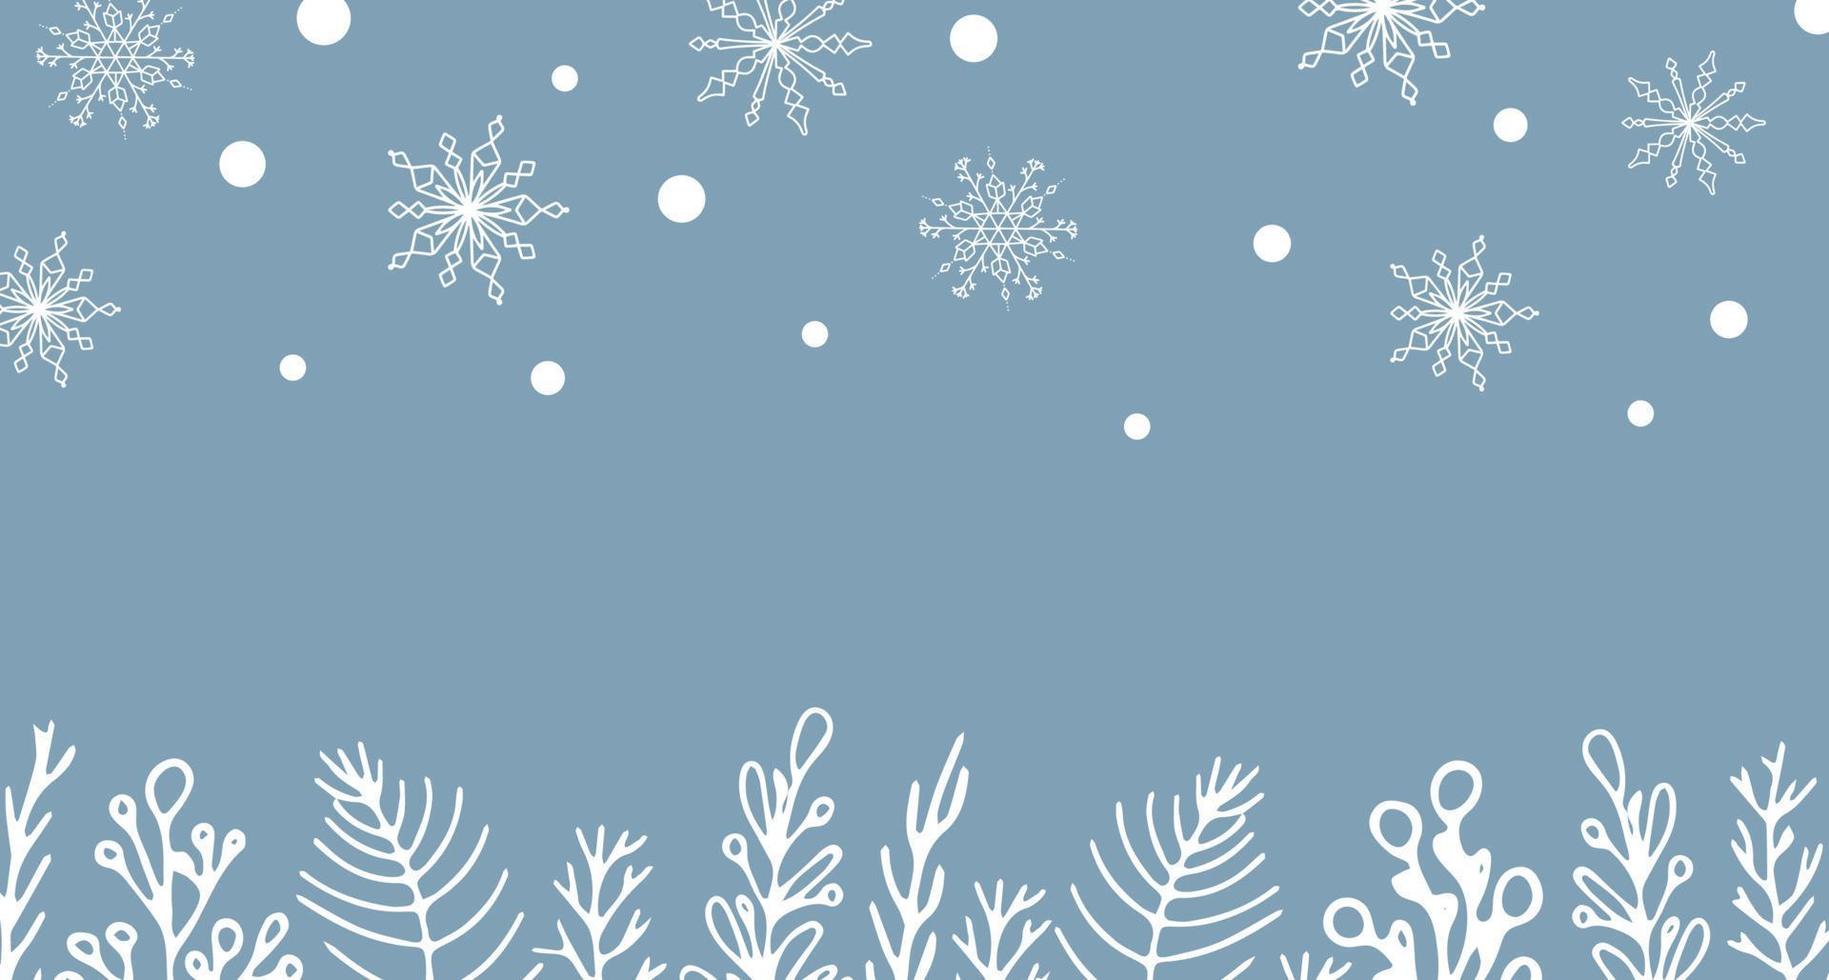 belo conjunto de árvore de natal de elementos botânicos brancos, bagas para design de inverno. coleção de elementos de ano novo de natal. silhuetas congeladas de galhos de cristal sobre um fundo azul. vetor